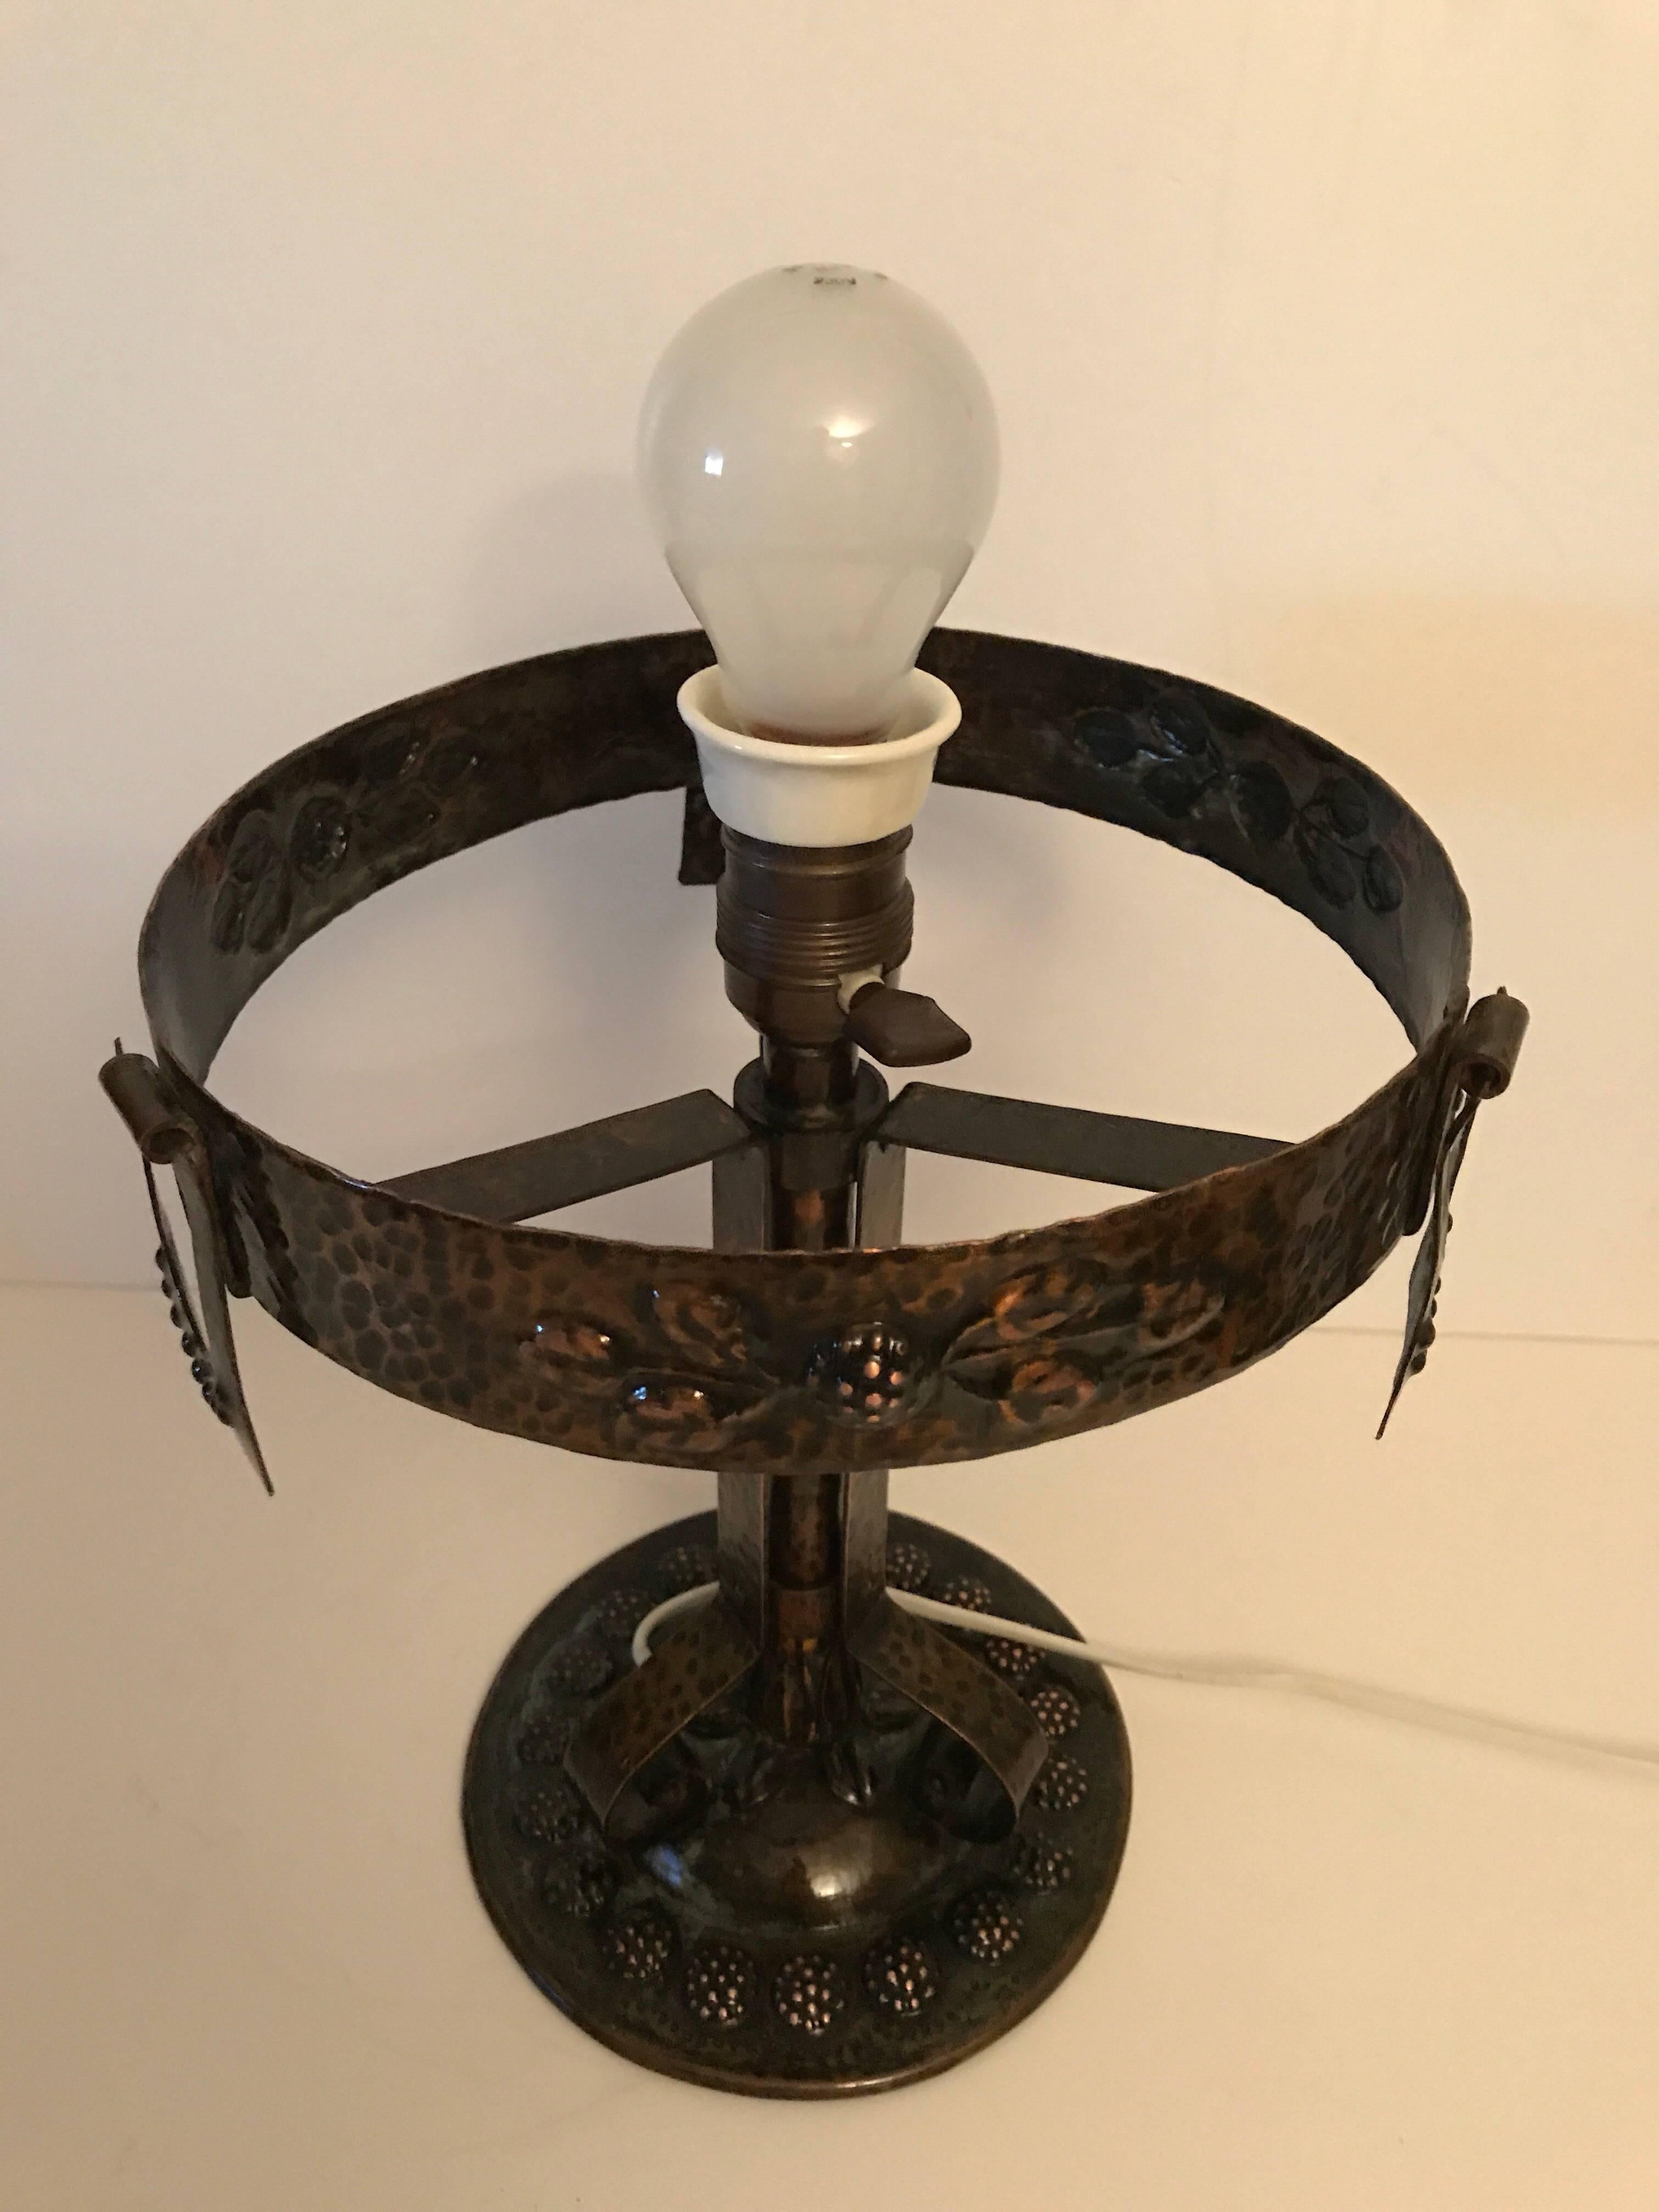 1915 Swedish Art Nouveau Jugendstil Copper and Glass Table Lamp For Sale 1